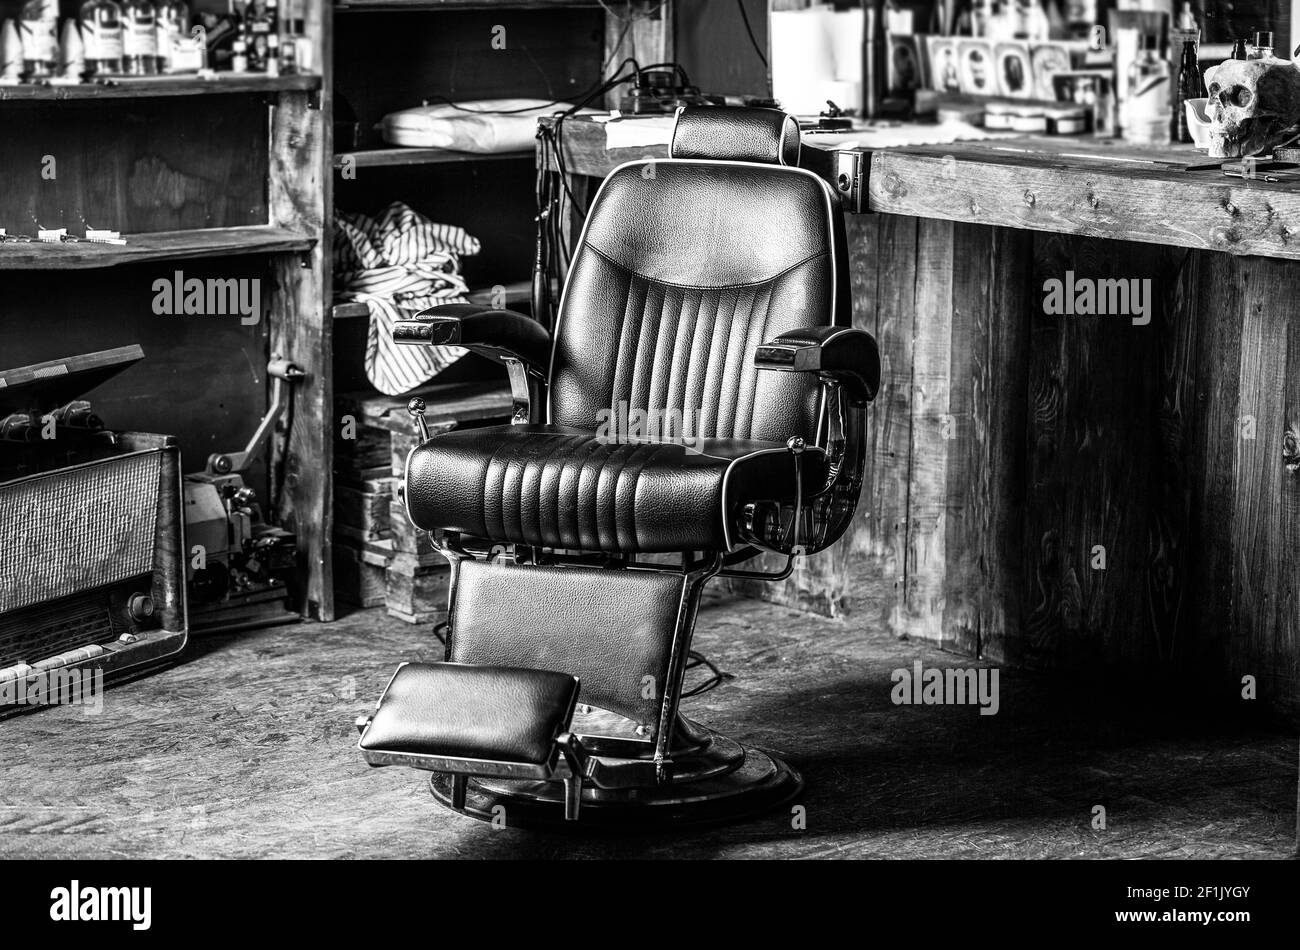 Fauteuil de barbershop, coiffeur et salon de coiffure modernes, salon de coiffure pour hommes. Élégant fauteuil de coiffure vintage. Coiffeur professionnel dans la barbershop Banque D'Images